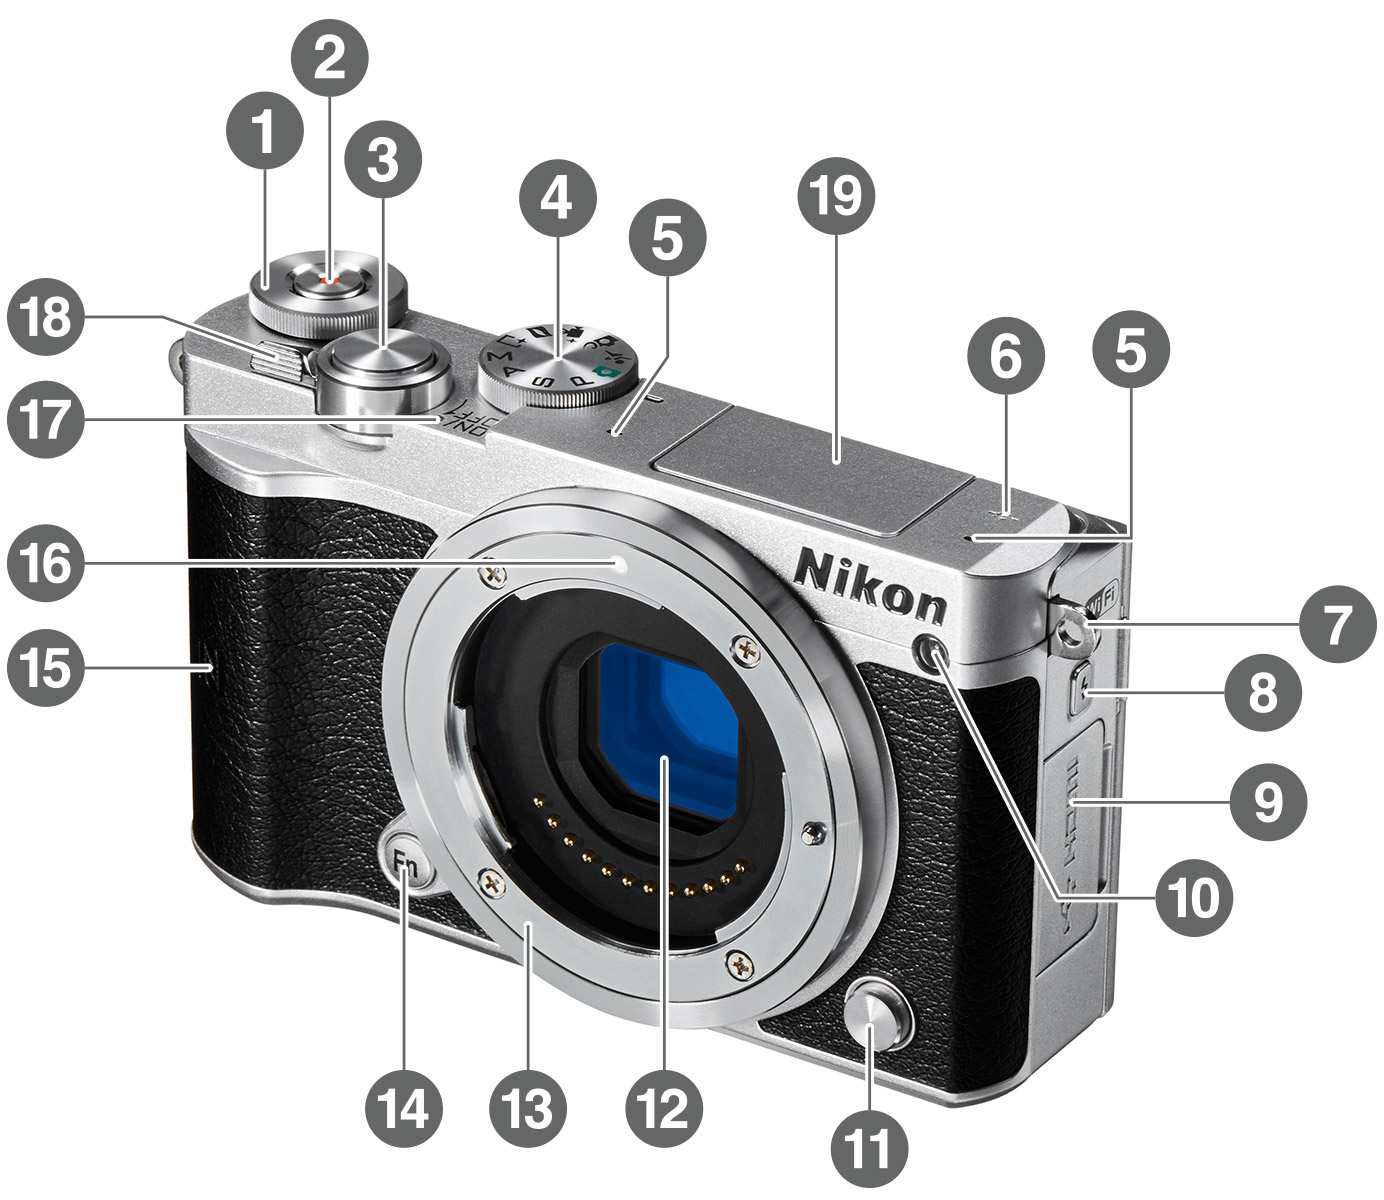 Nikon  １ J5